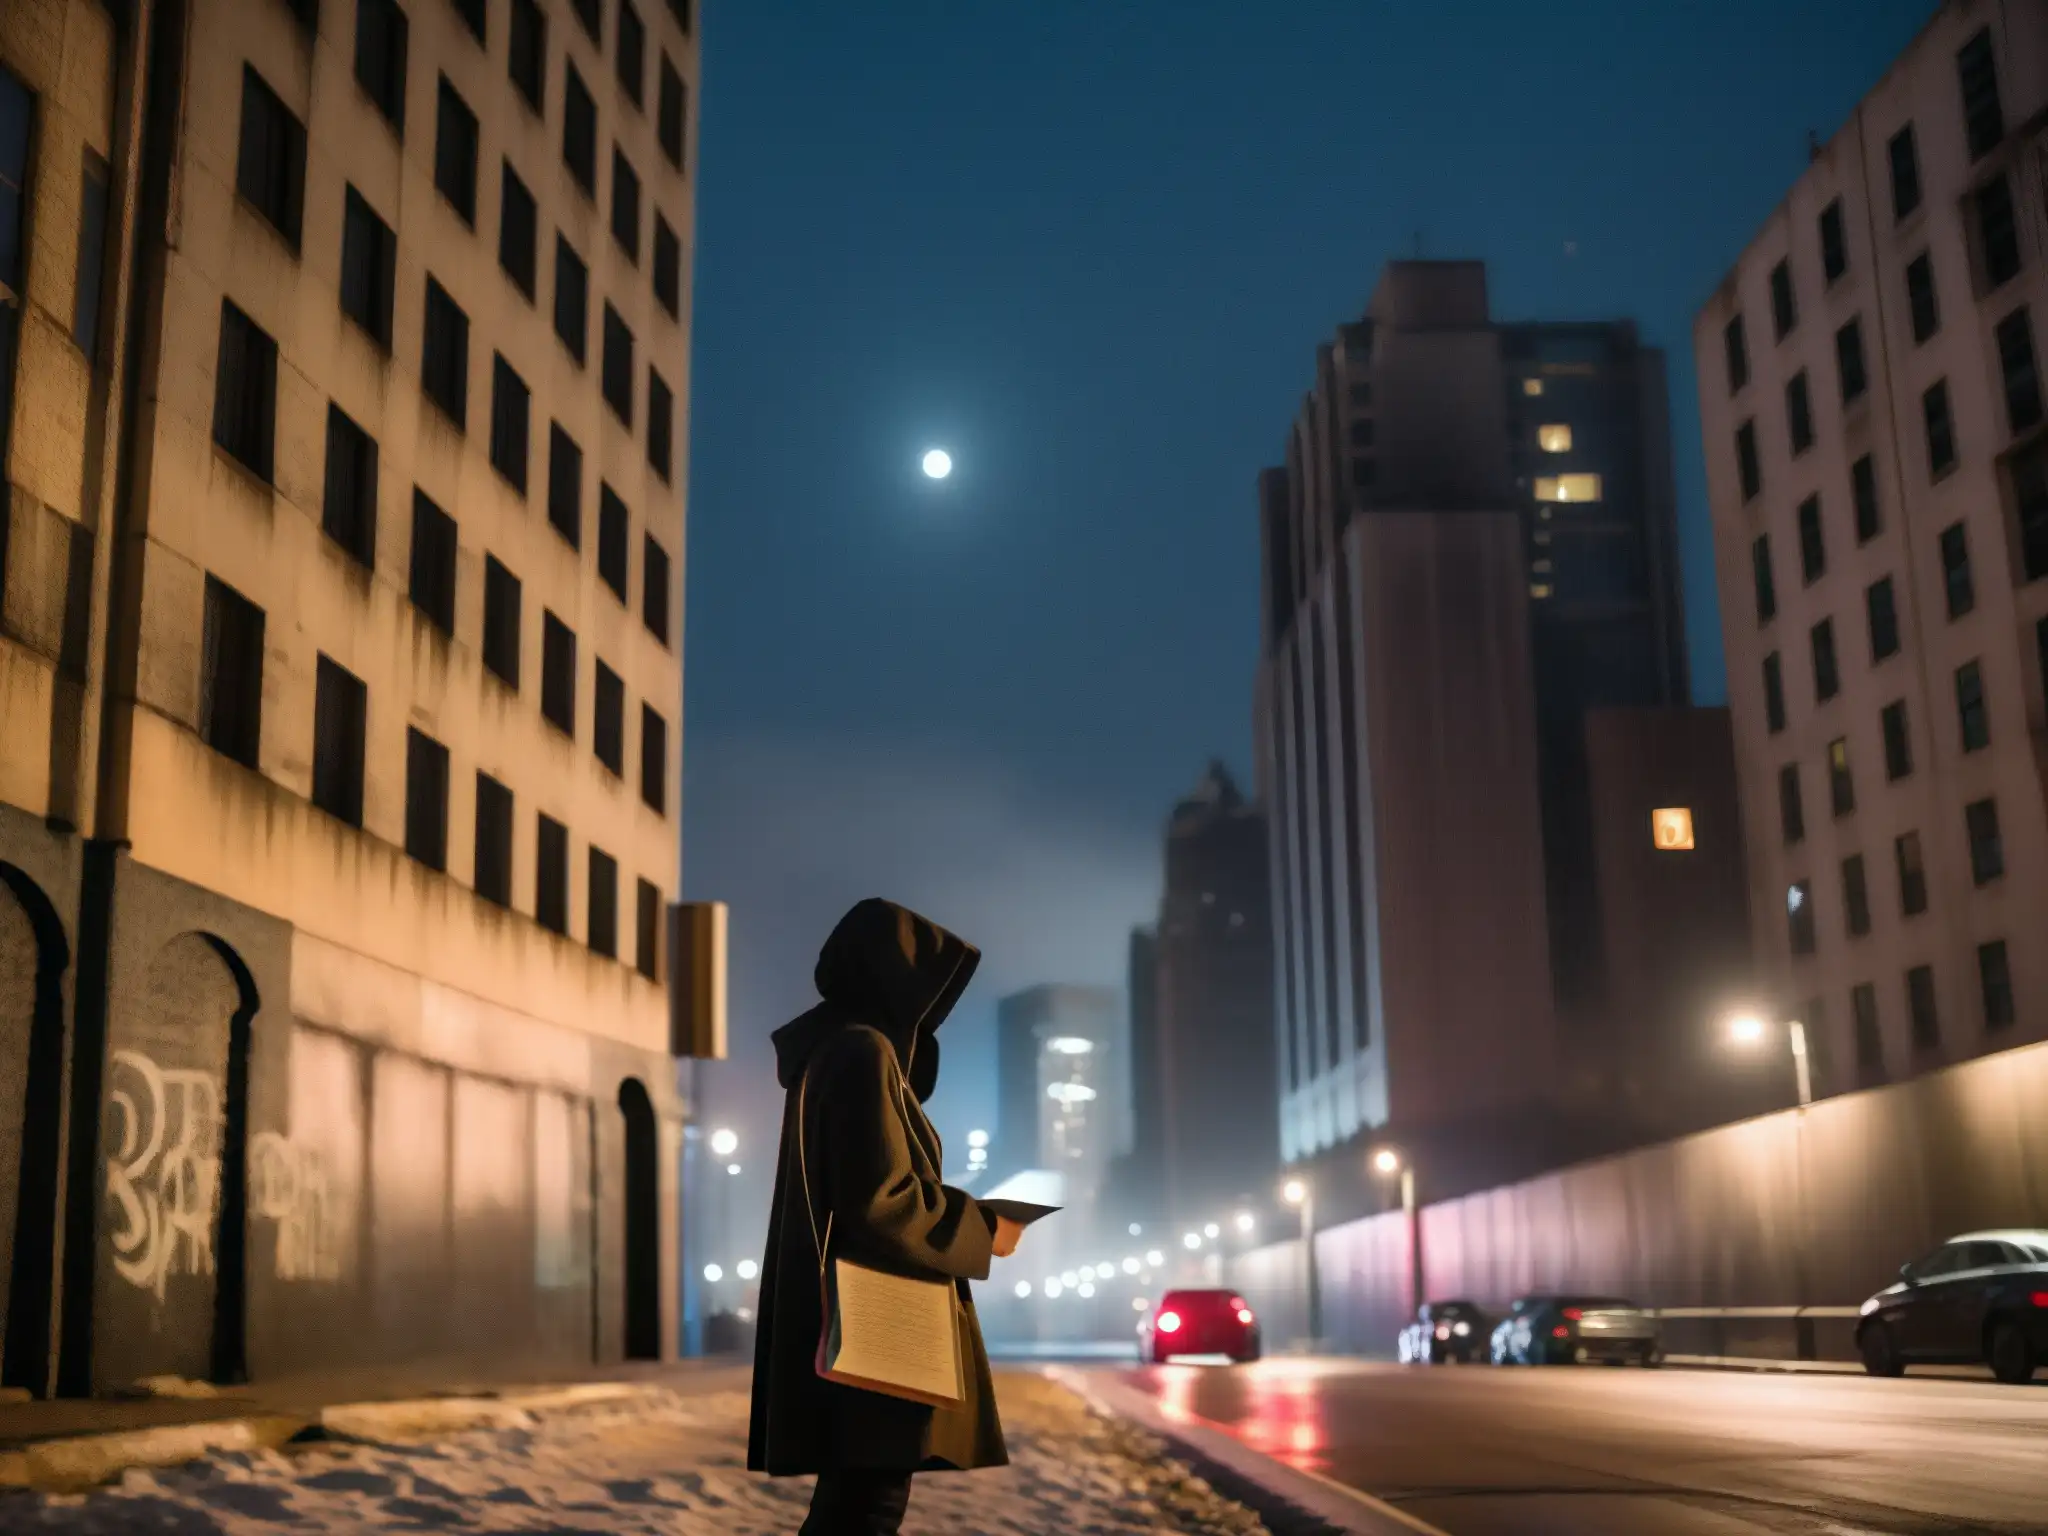 Figura en capucha frente a graffiti, con rascacielos en la distancia